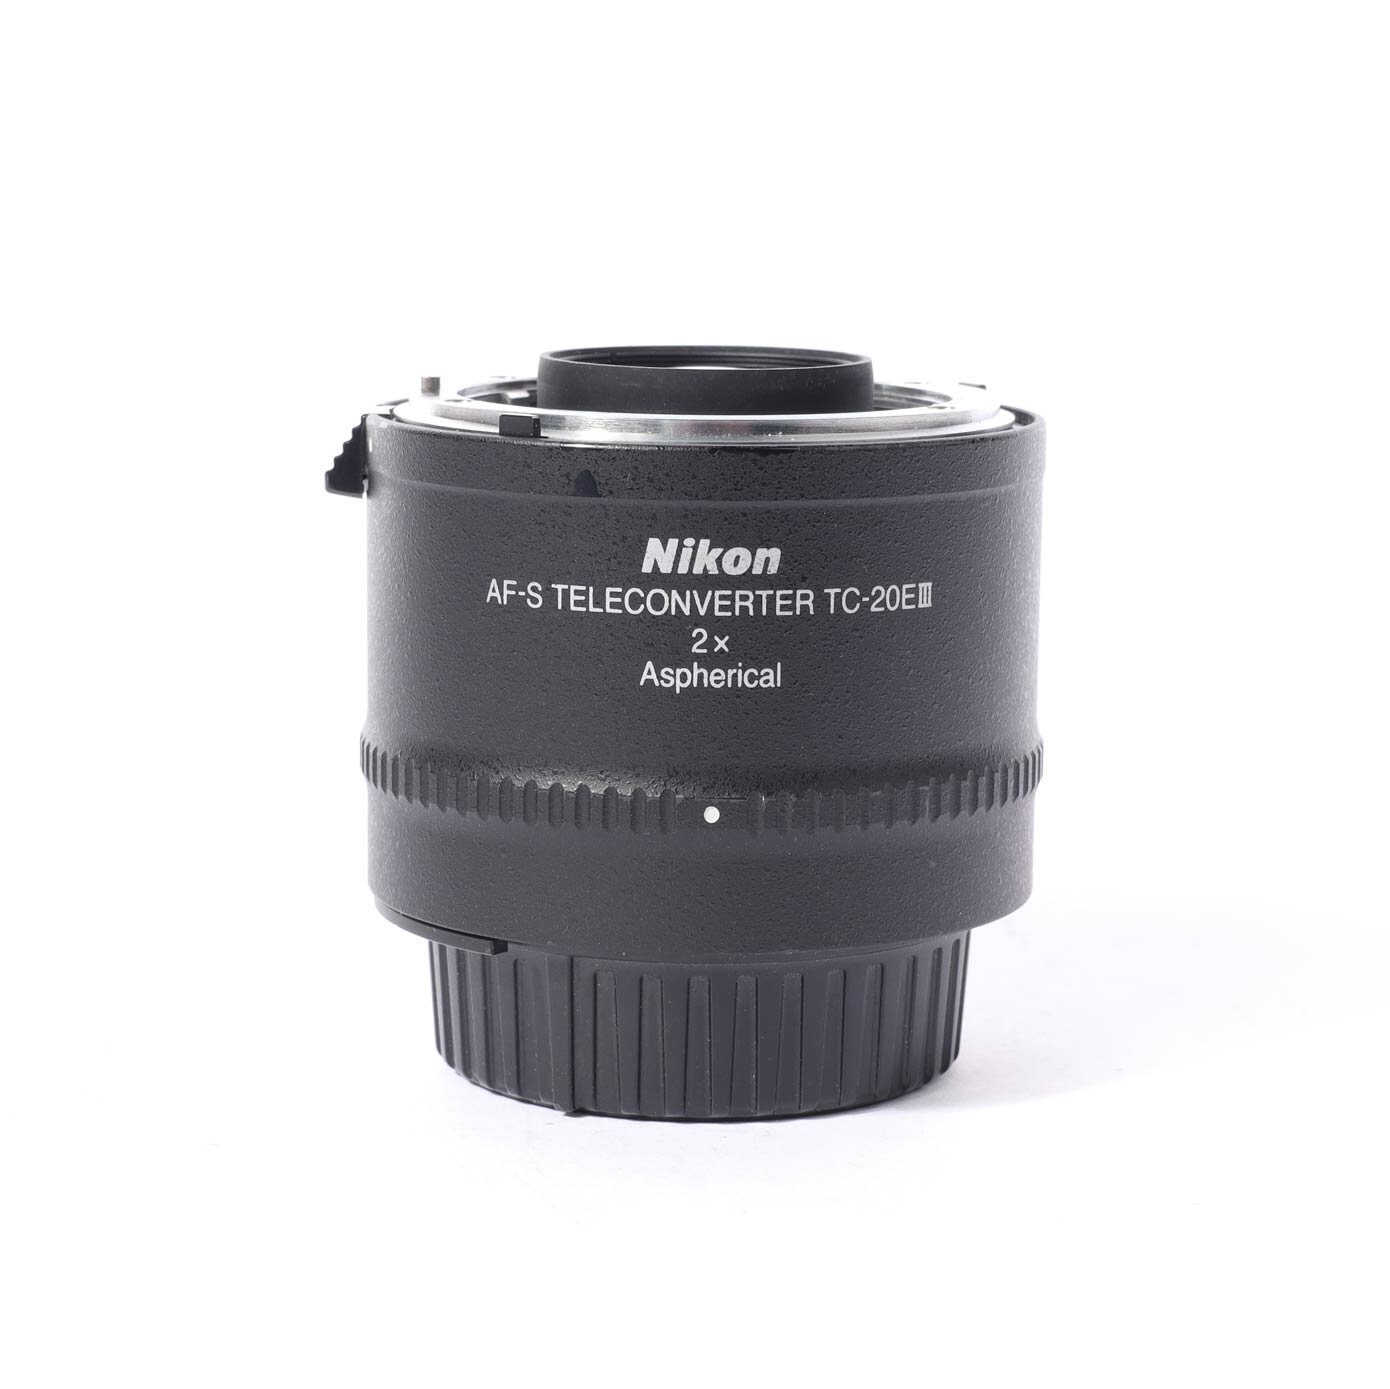 Nikon TC 20E III Telekonverter